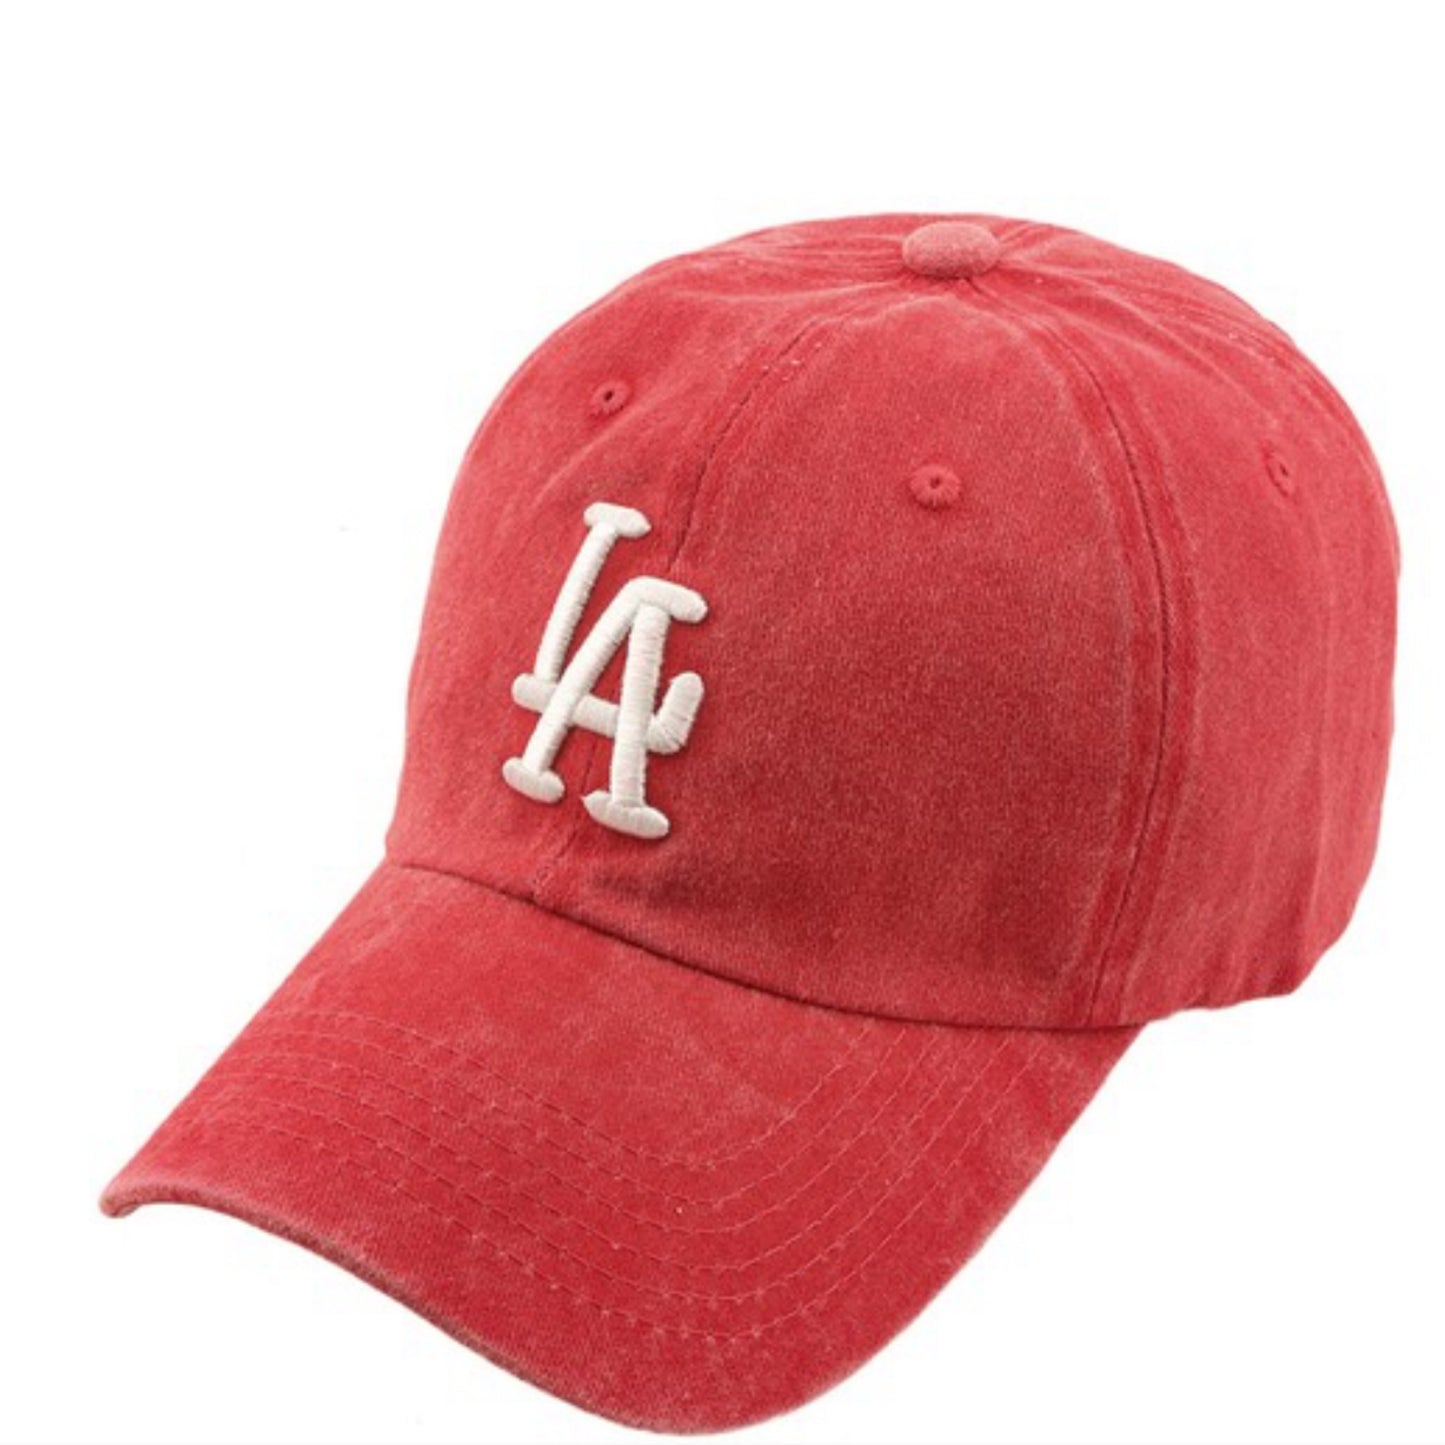 LA CAP (RED)